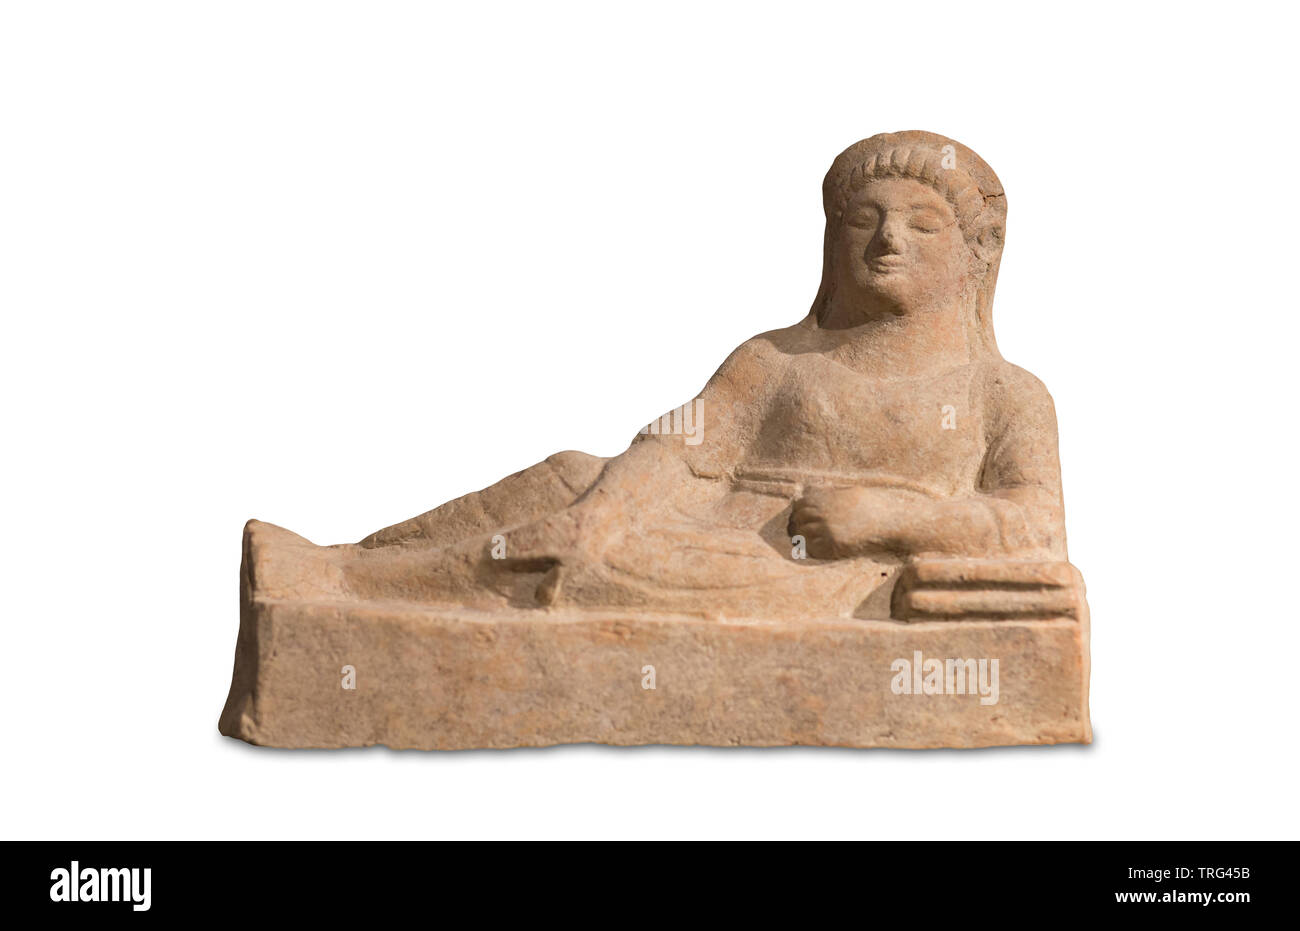 Malaga, Spanien - September 21th, 2018: Terrakotta etruskischen figurine Darstellung liegende Dame. 5. Jahrhundert v. Chr.. Bauer Museum Stockfoto